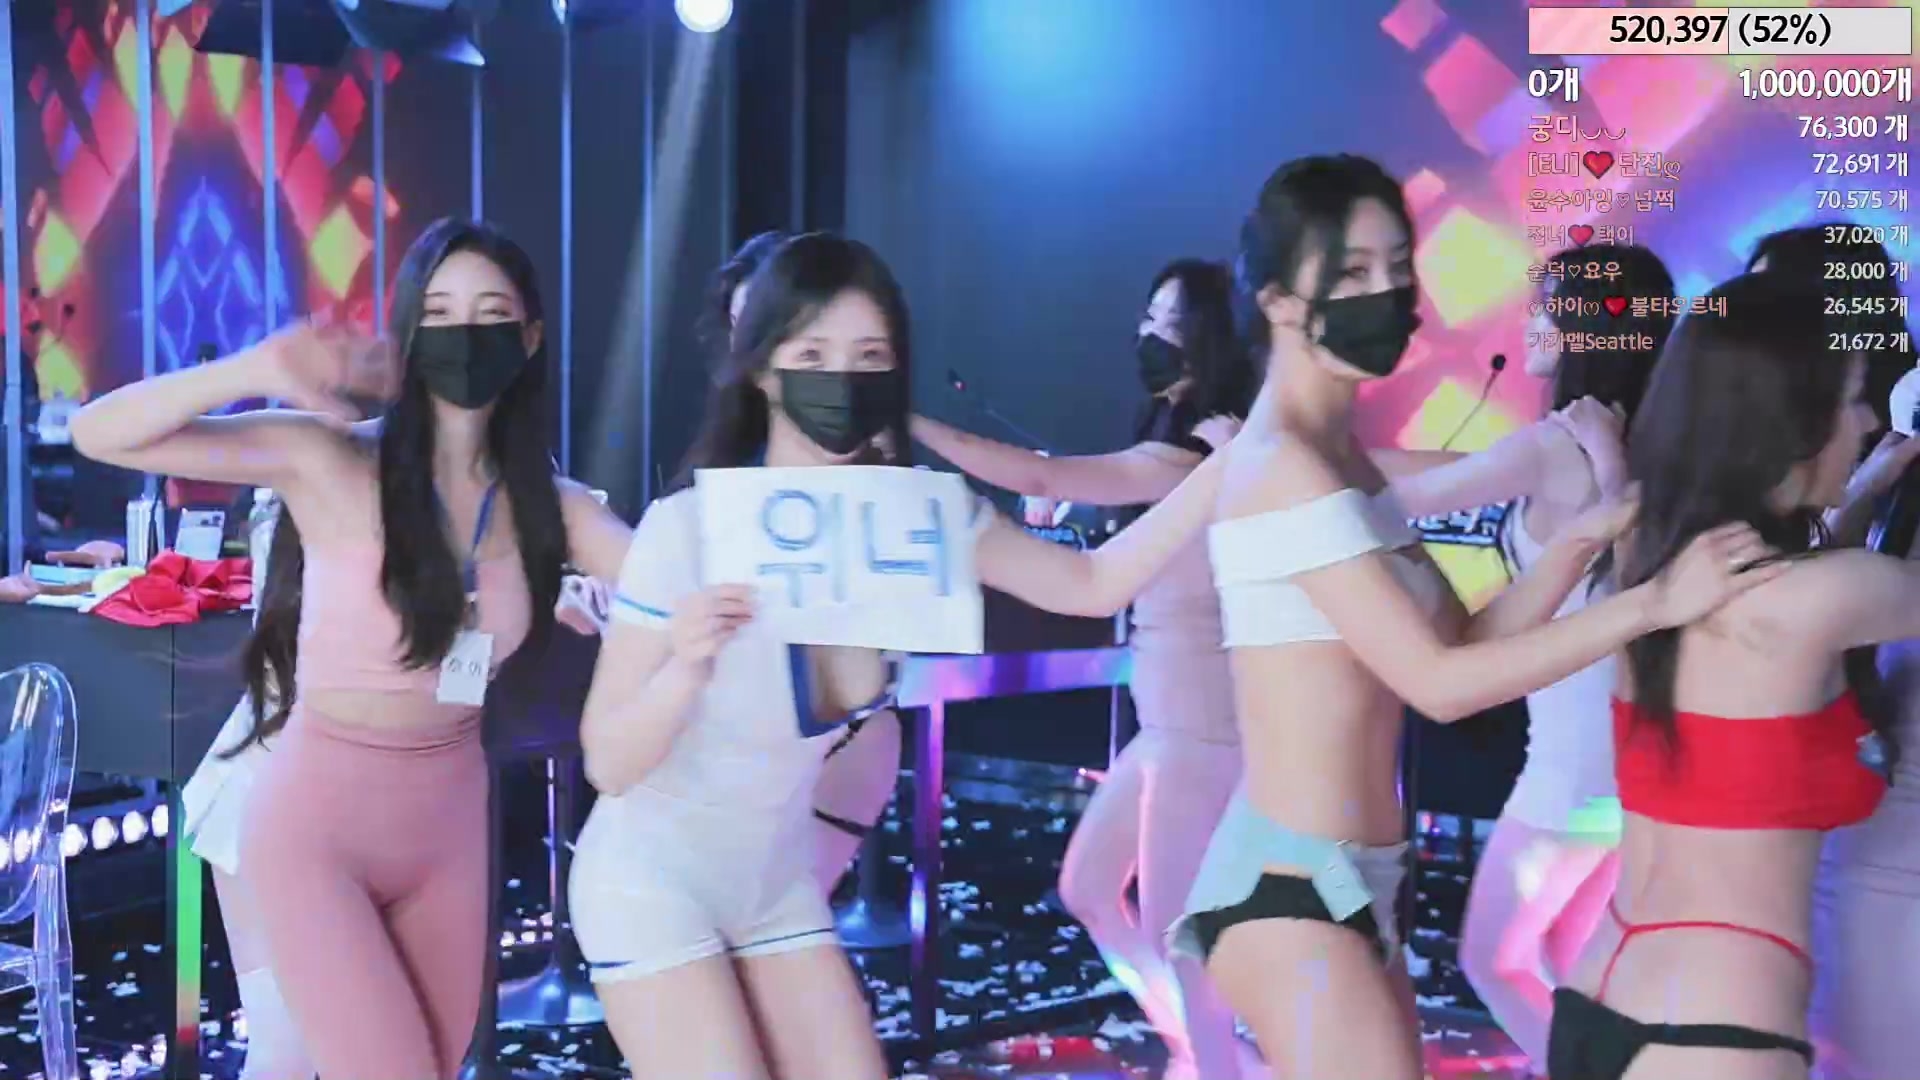 한국 여성 그룹 [진리] 벗은 핫 댄스 라이브 쇼 첫 번째 총알, 하나는 몸, 가슴, 아름다움에 관계없이 훌륭함에서 최고입니다!